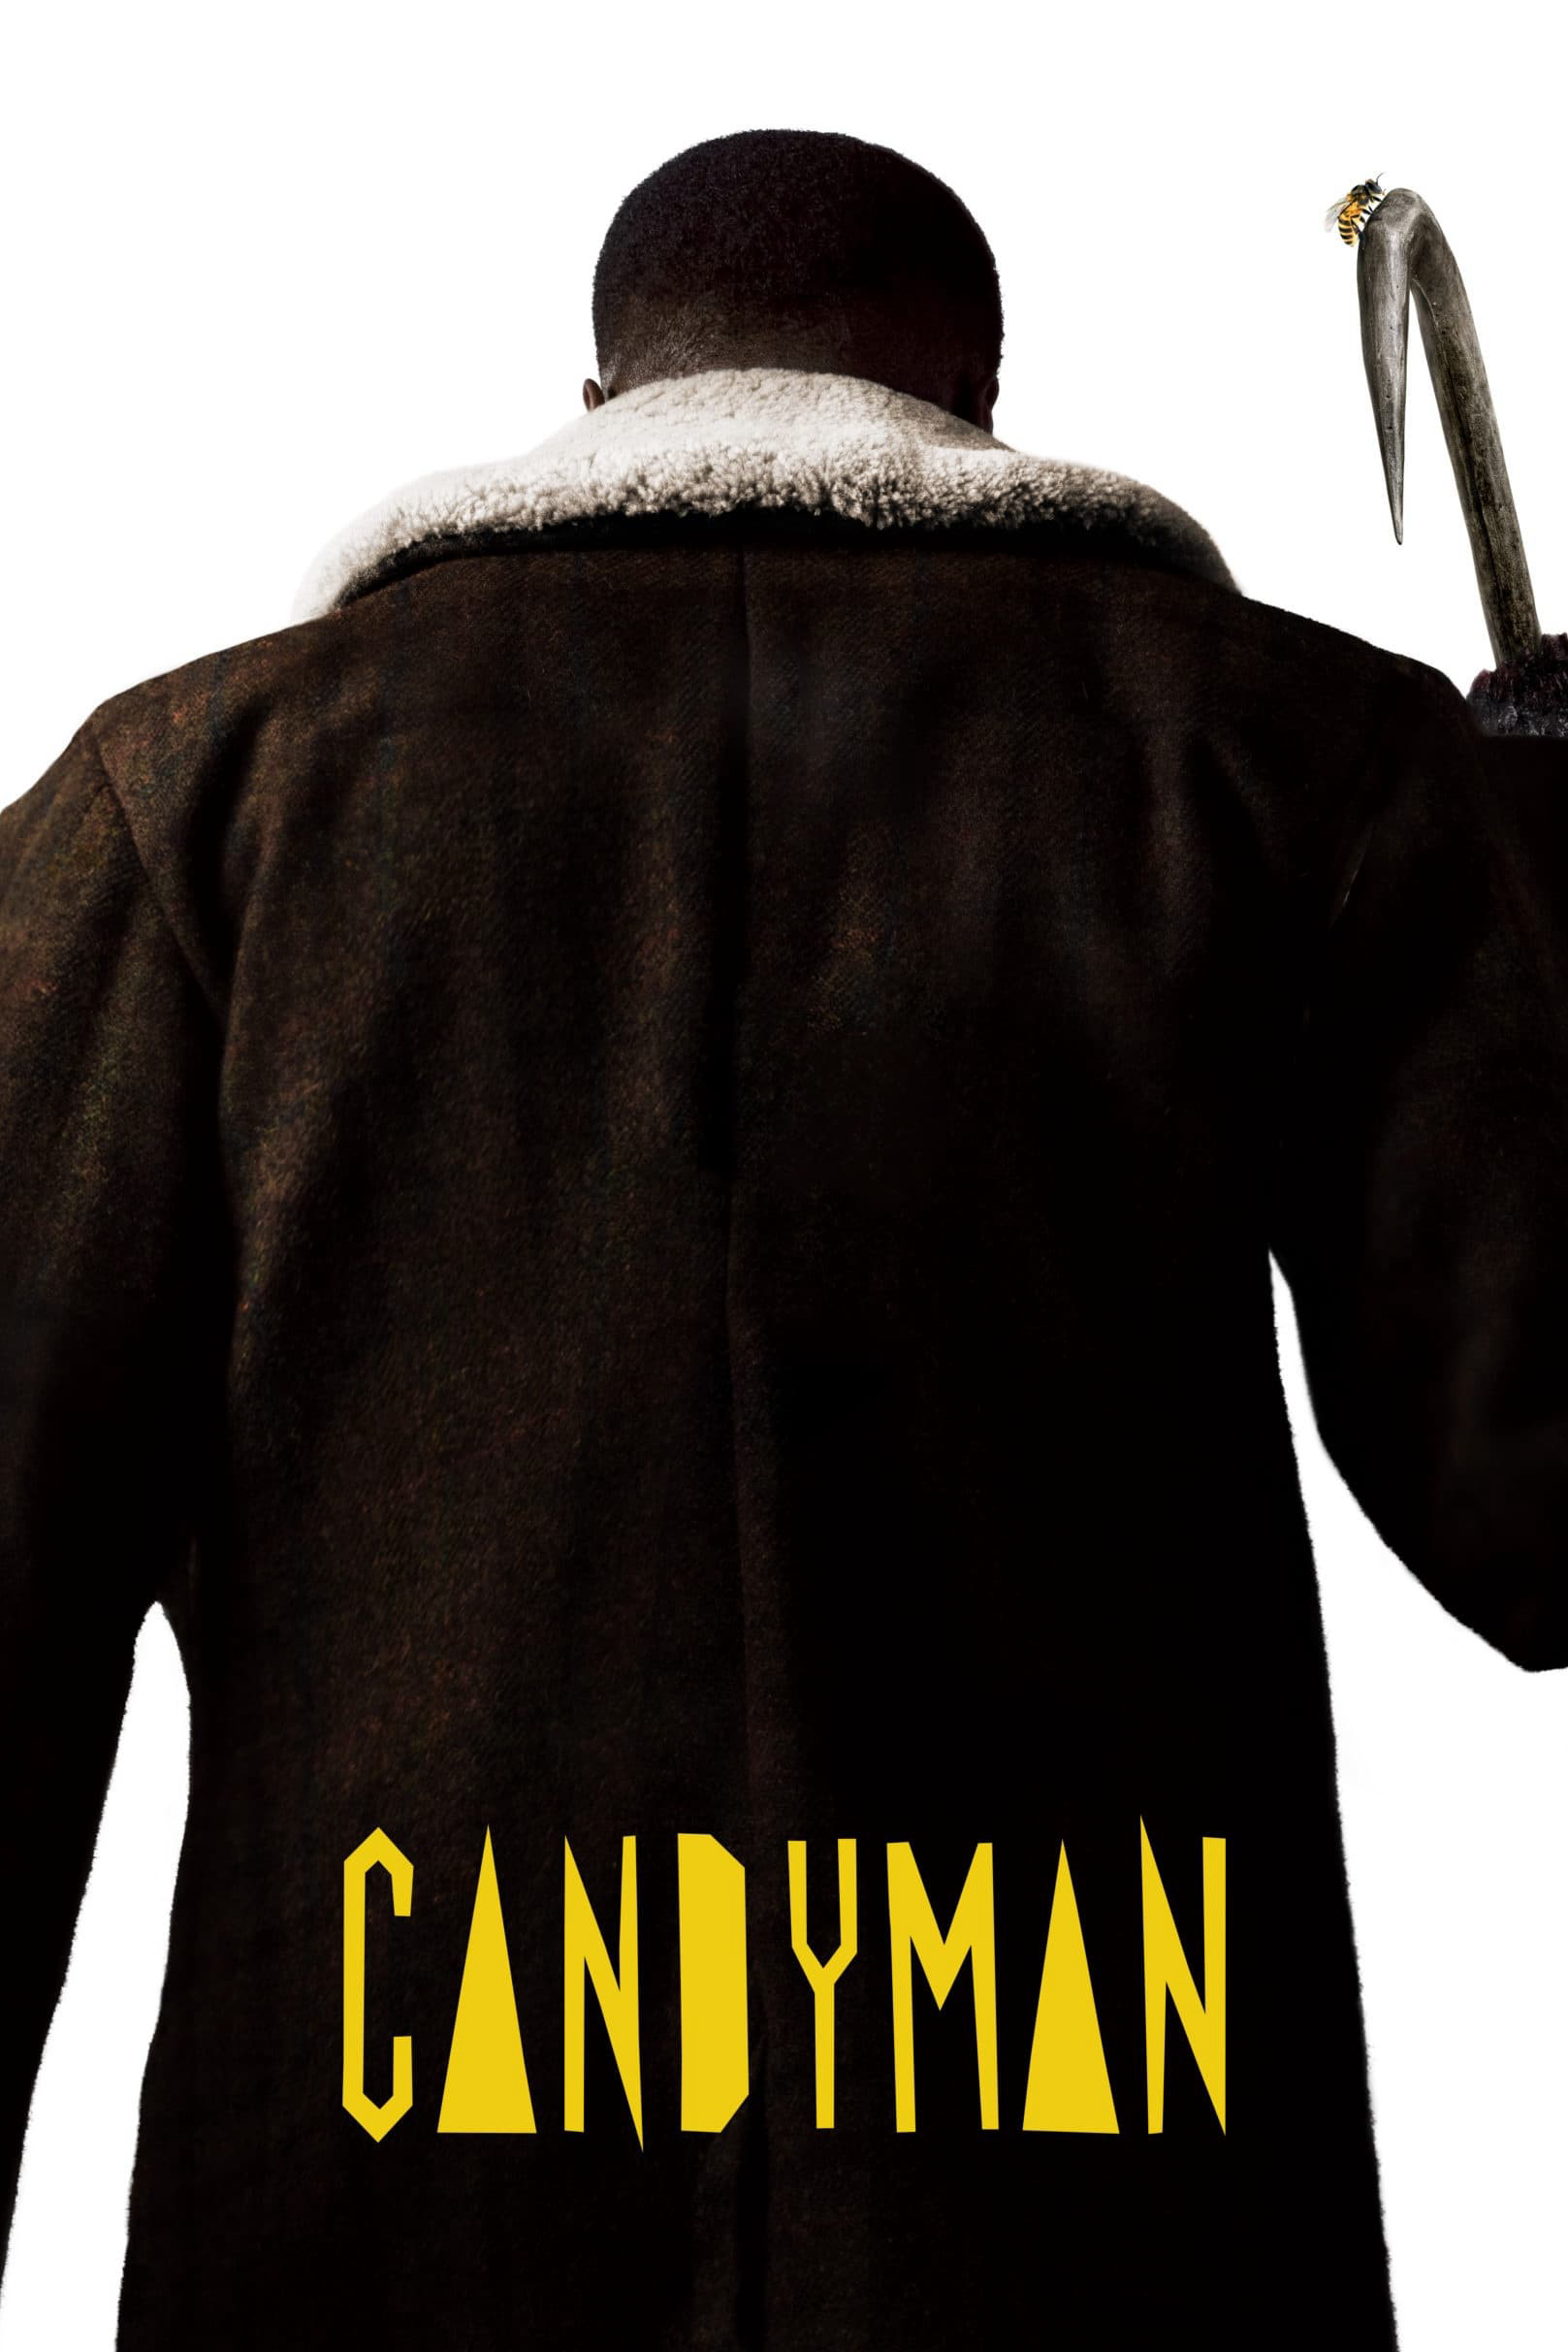 Poster Phim Sát Nhân Trong Gương (Candyman)